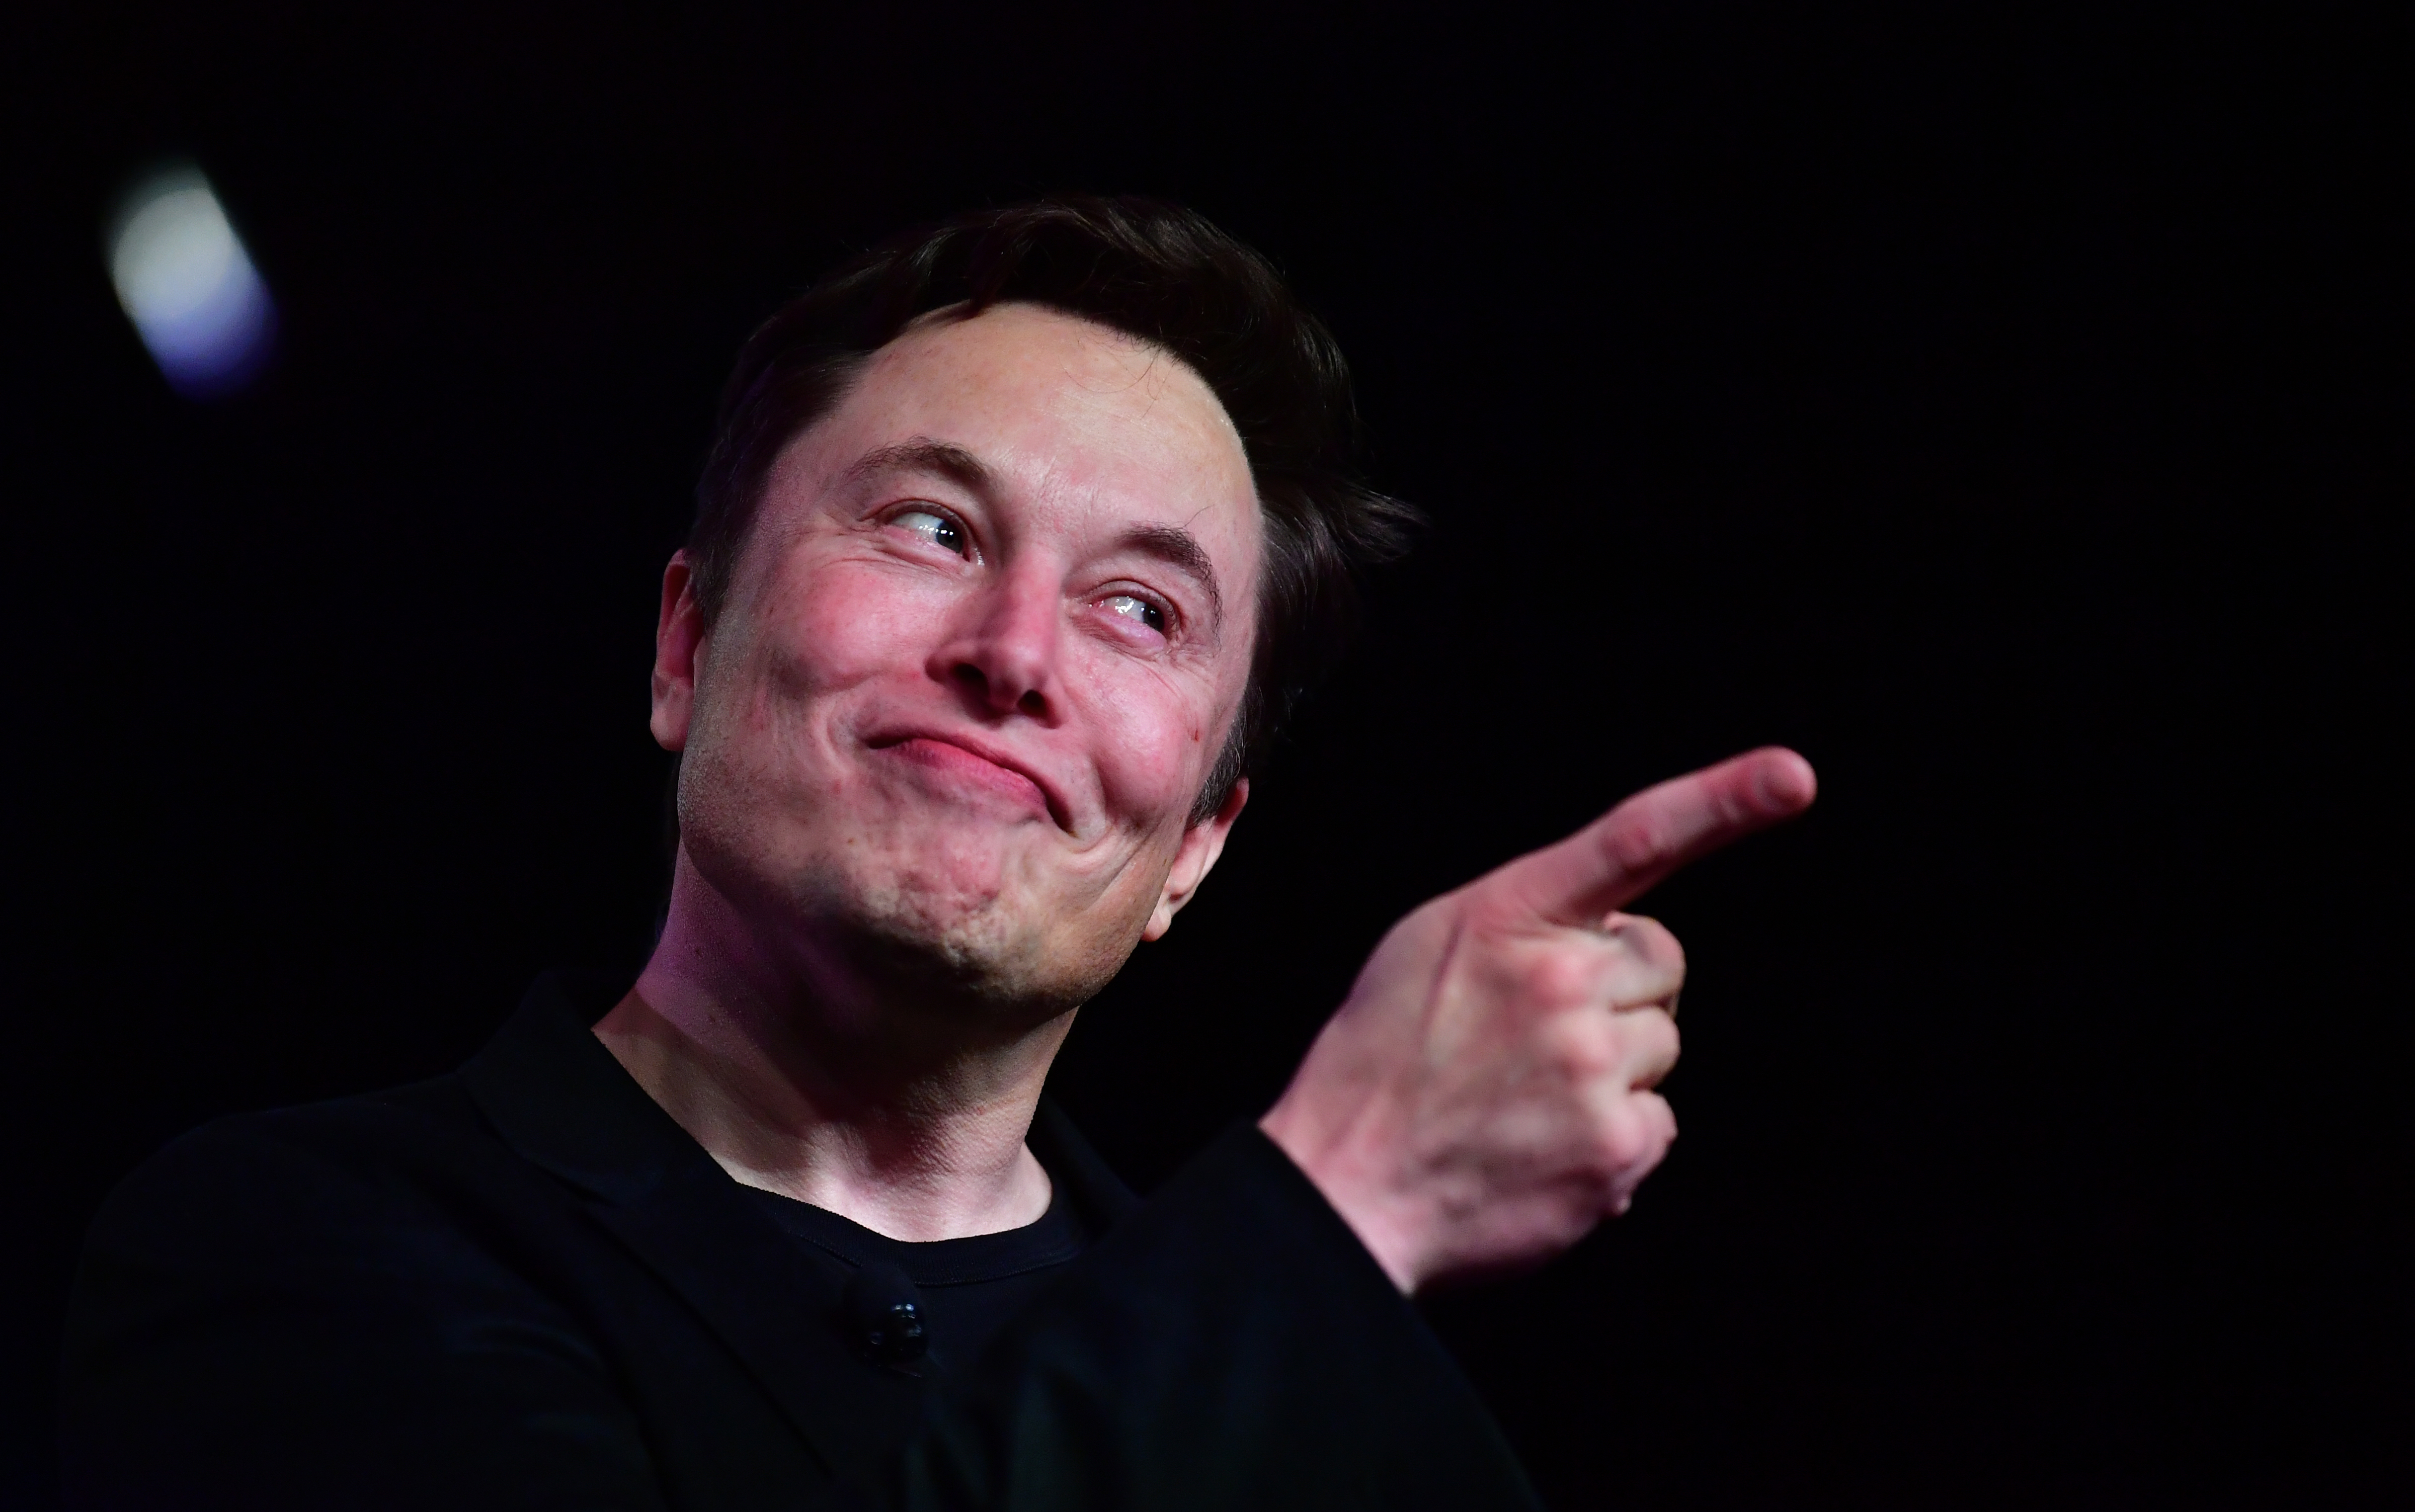 Elon Musk bemutatta, hogyan csatlakoztatná az emberek agyát számítógépekre